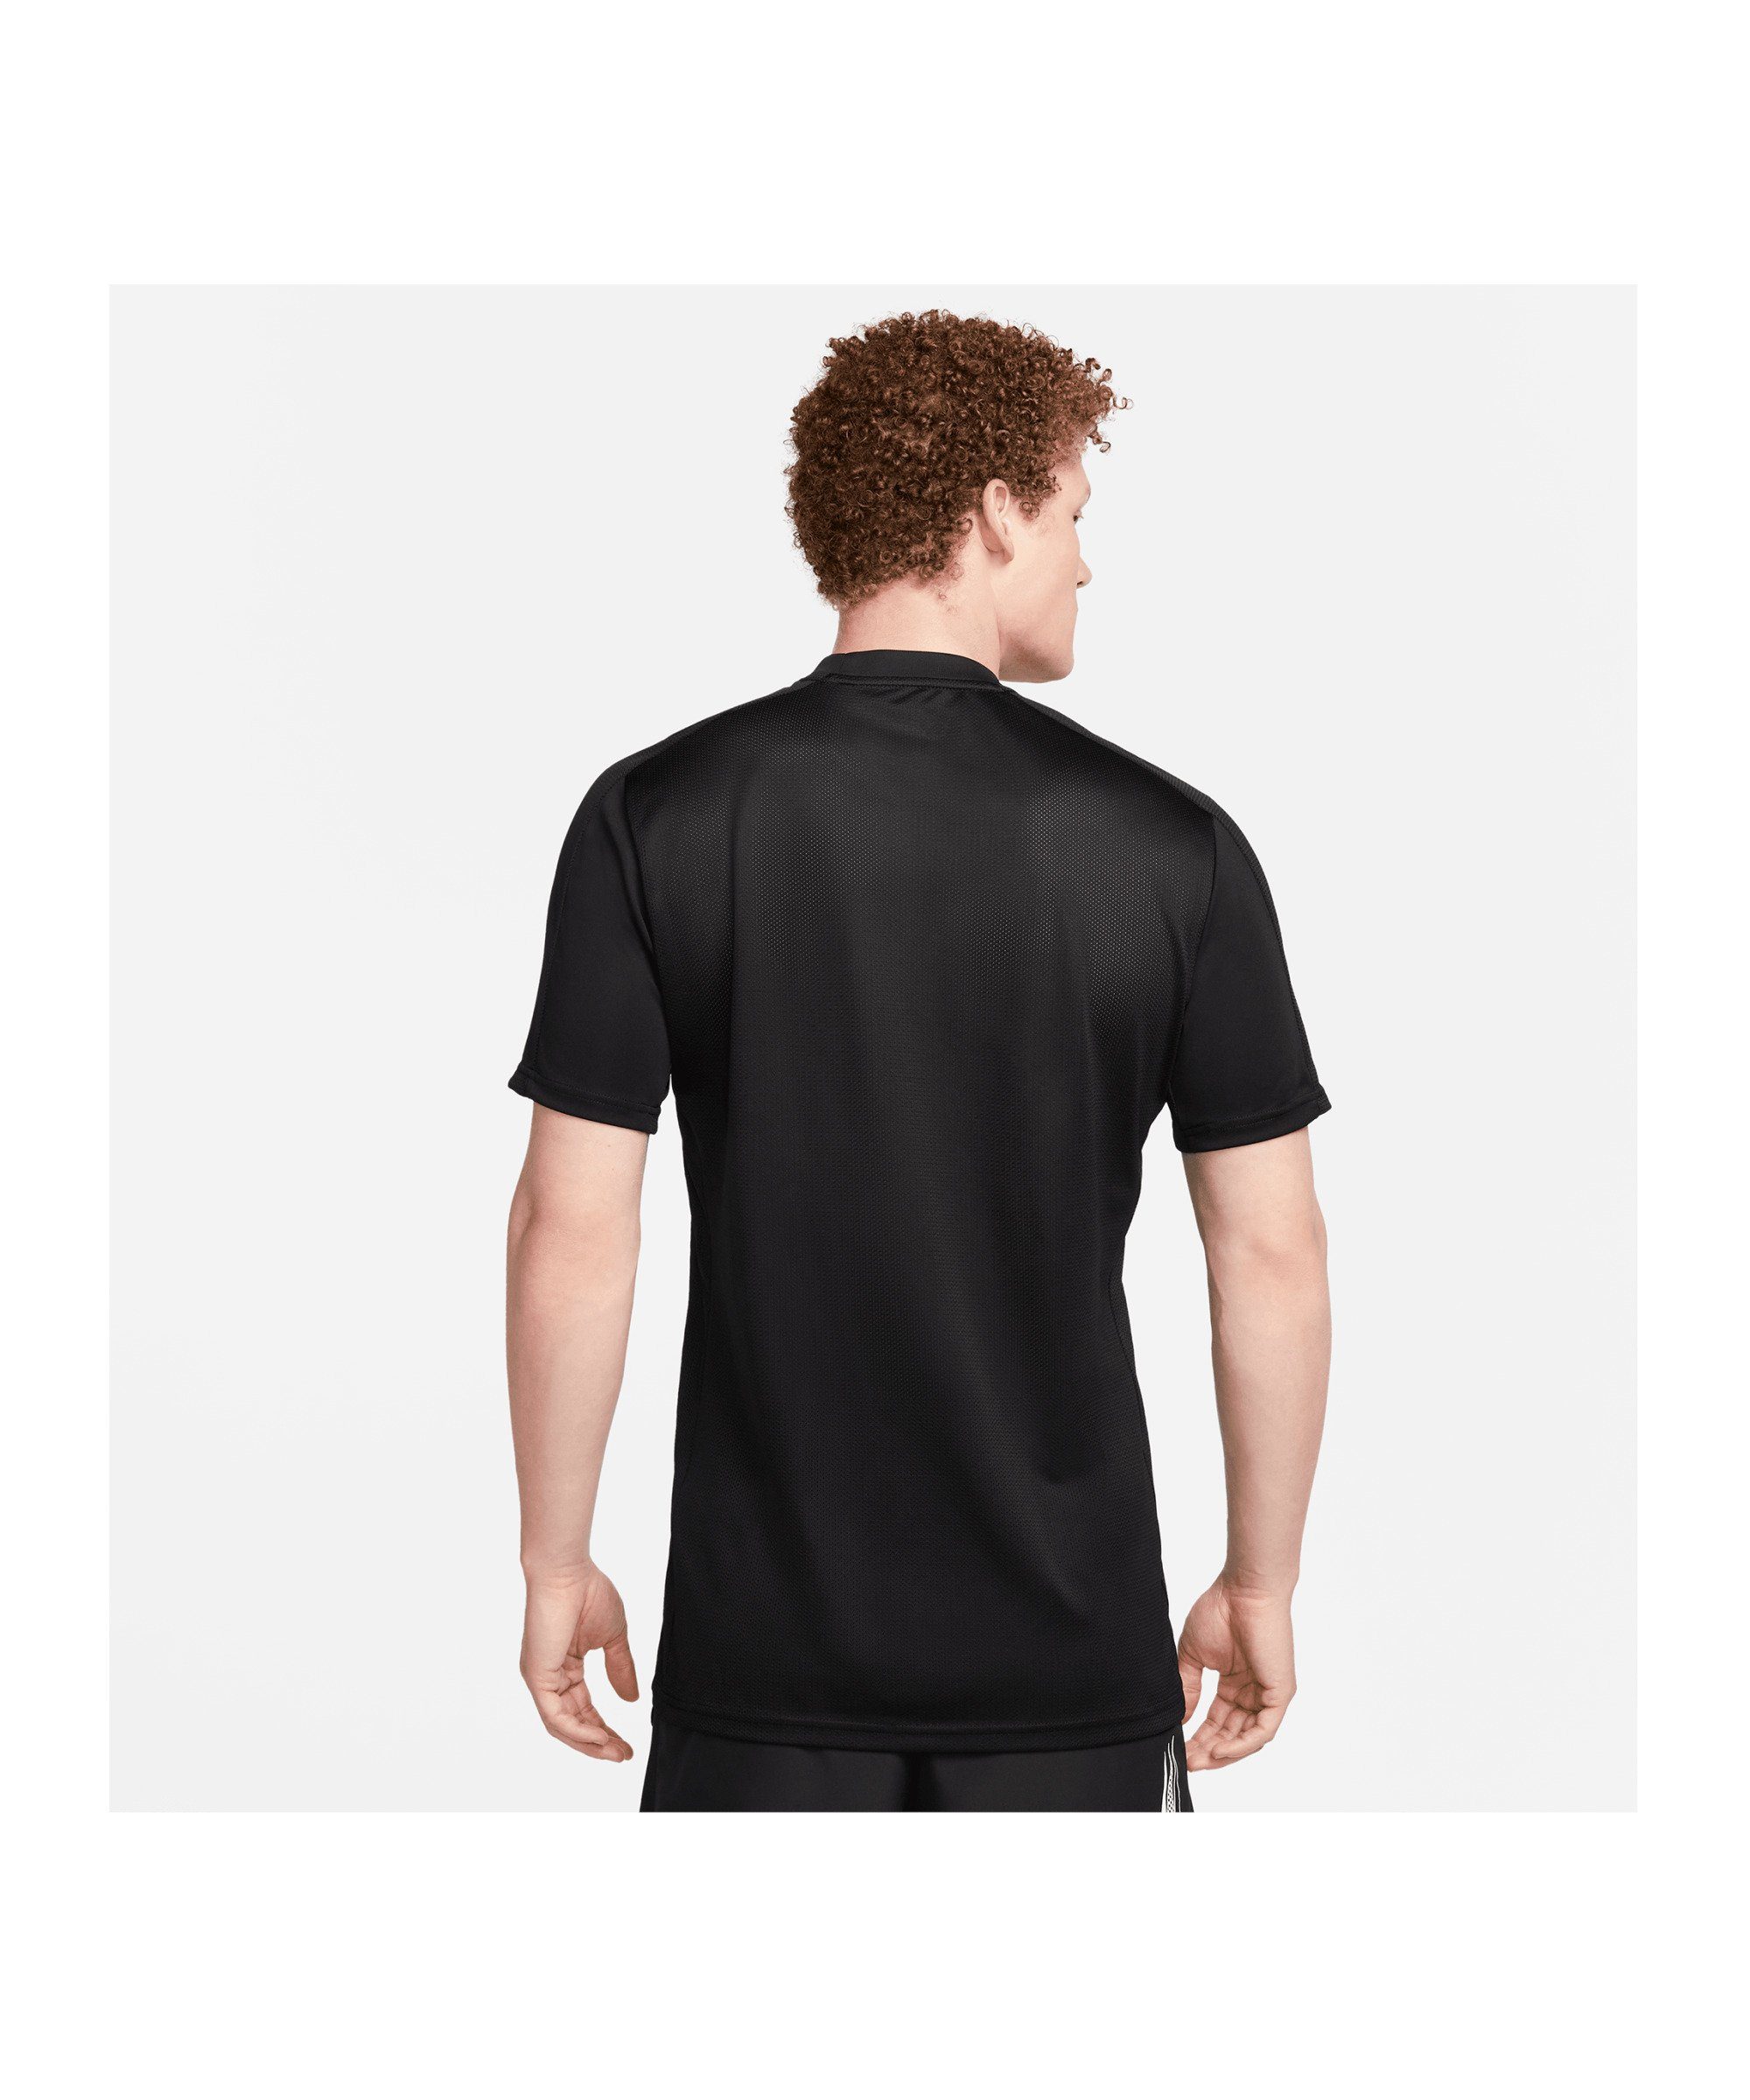 Nike T-Shirt Academy 3D Logo T-Shirt default schwarzschwarzschwarz